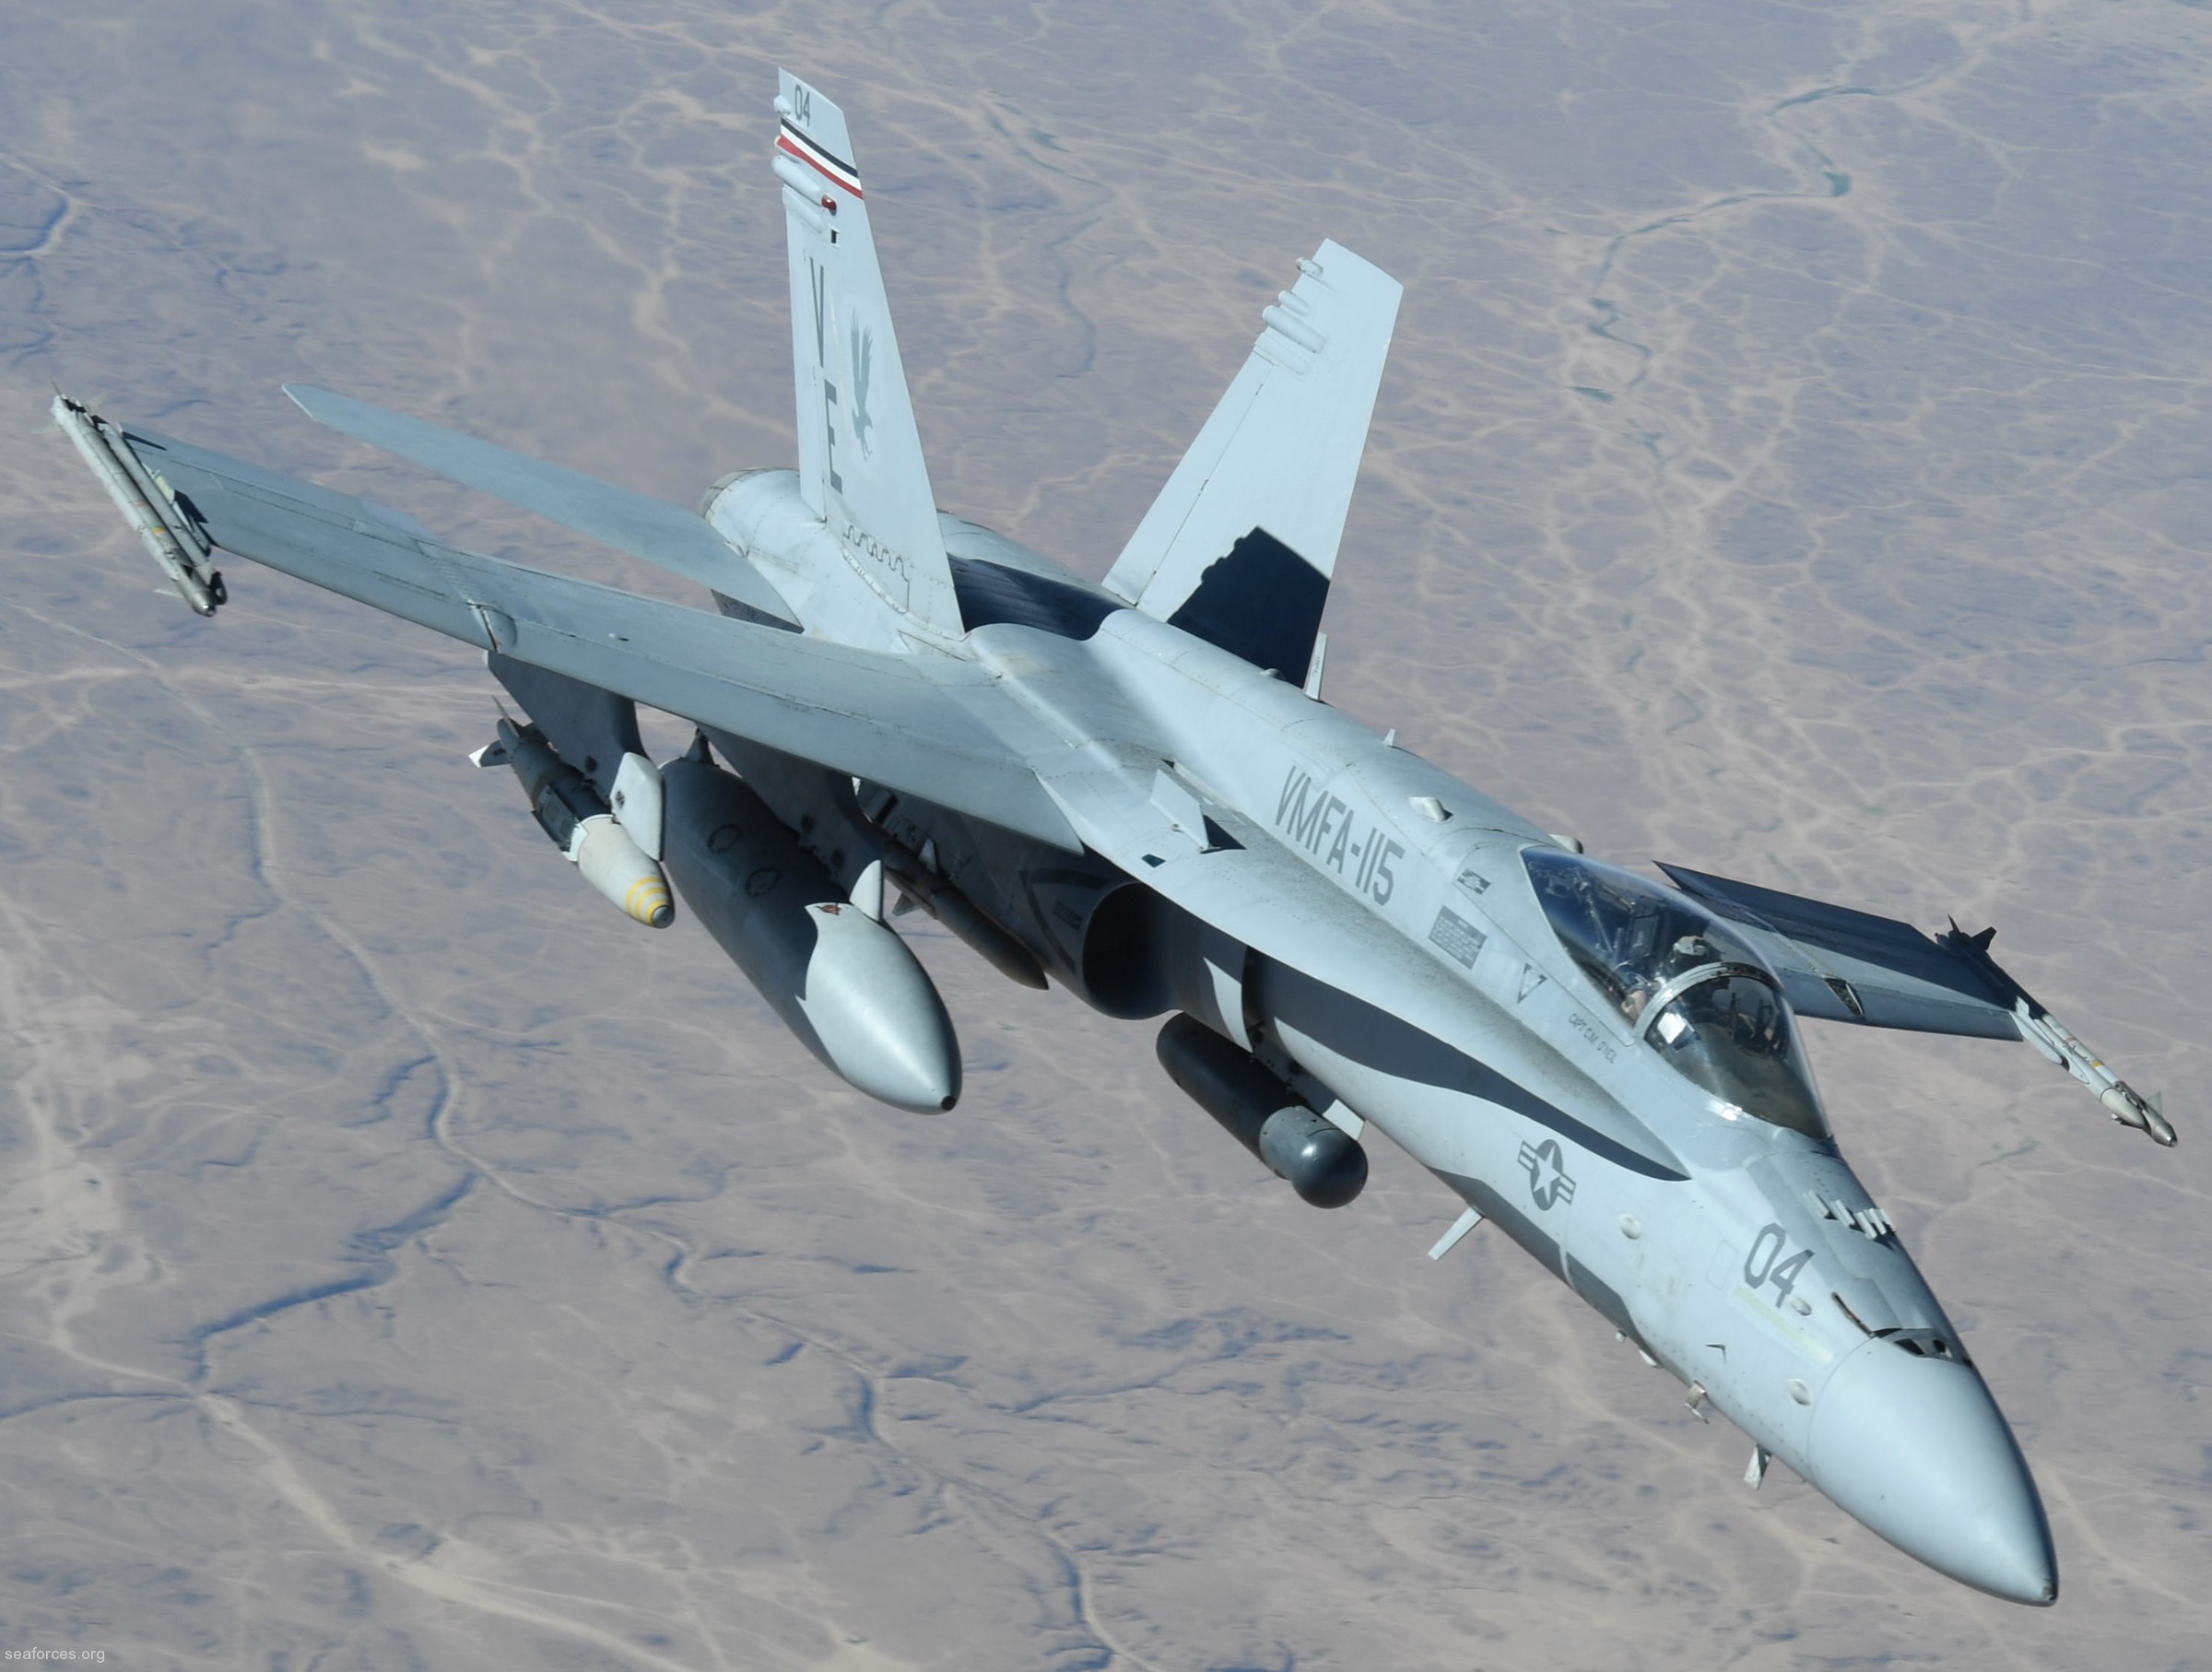 vmfa-115 silver eagles marine fighter attack squadron f/a-18a+ hornet 101 refueling iraq